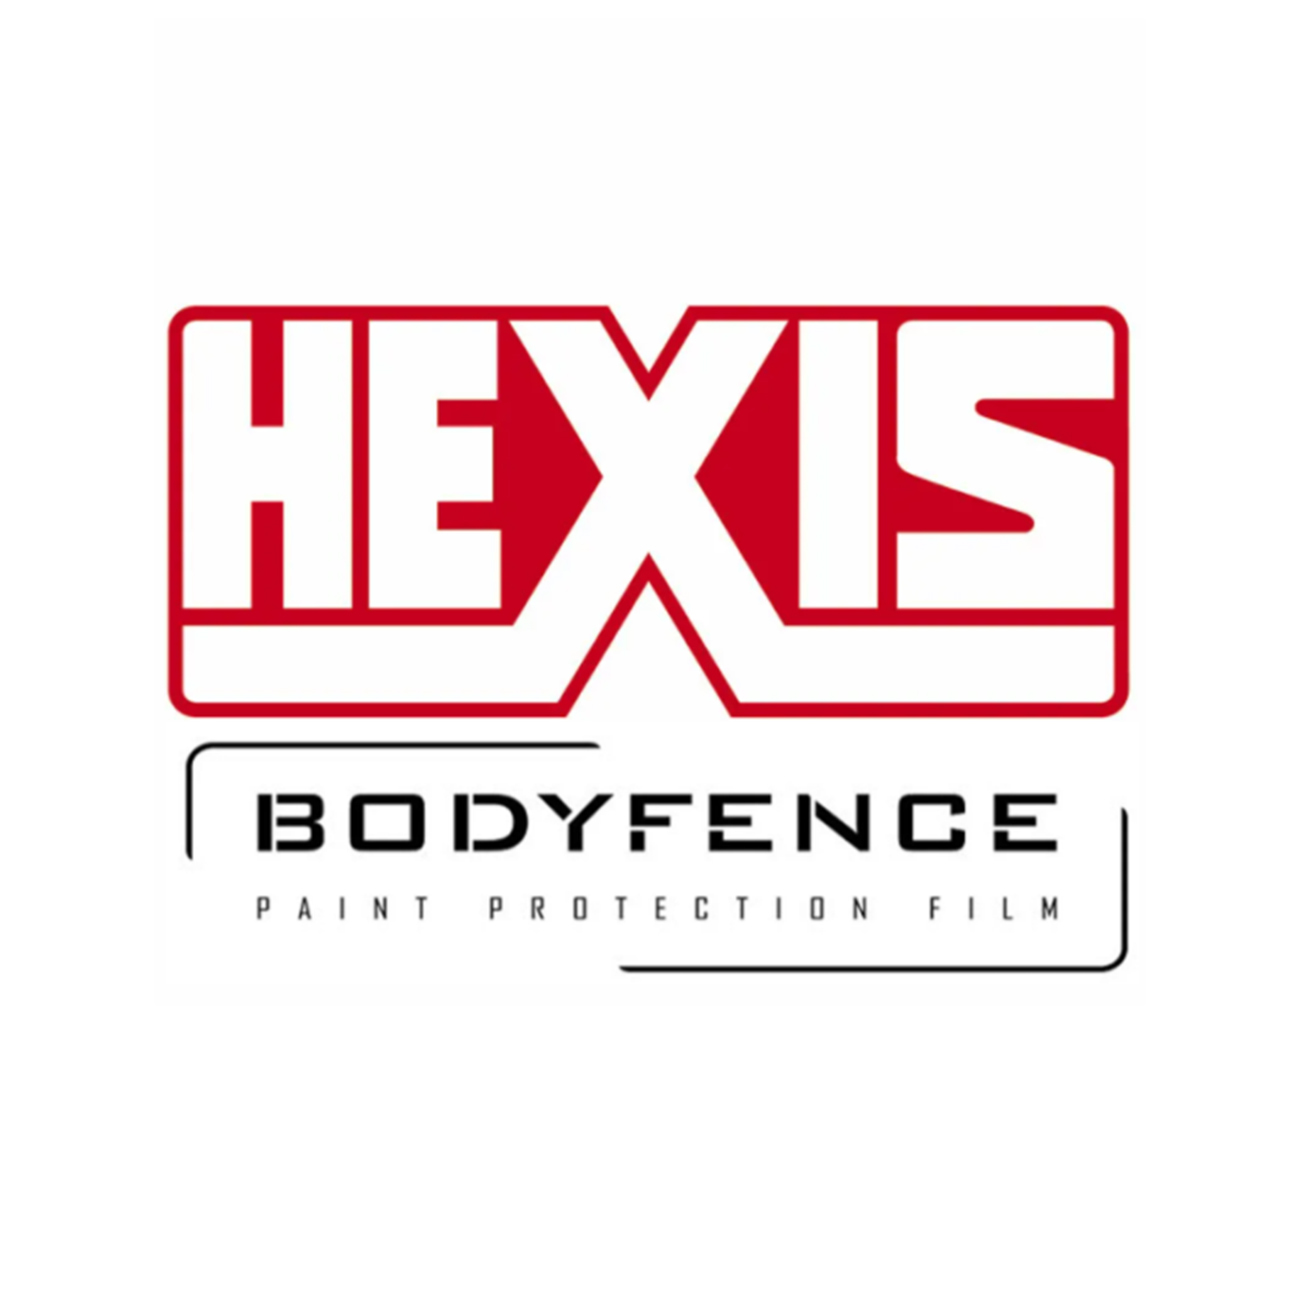 Hexis Bodyfence Х 76 см 